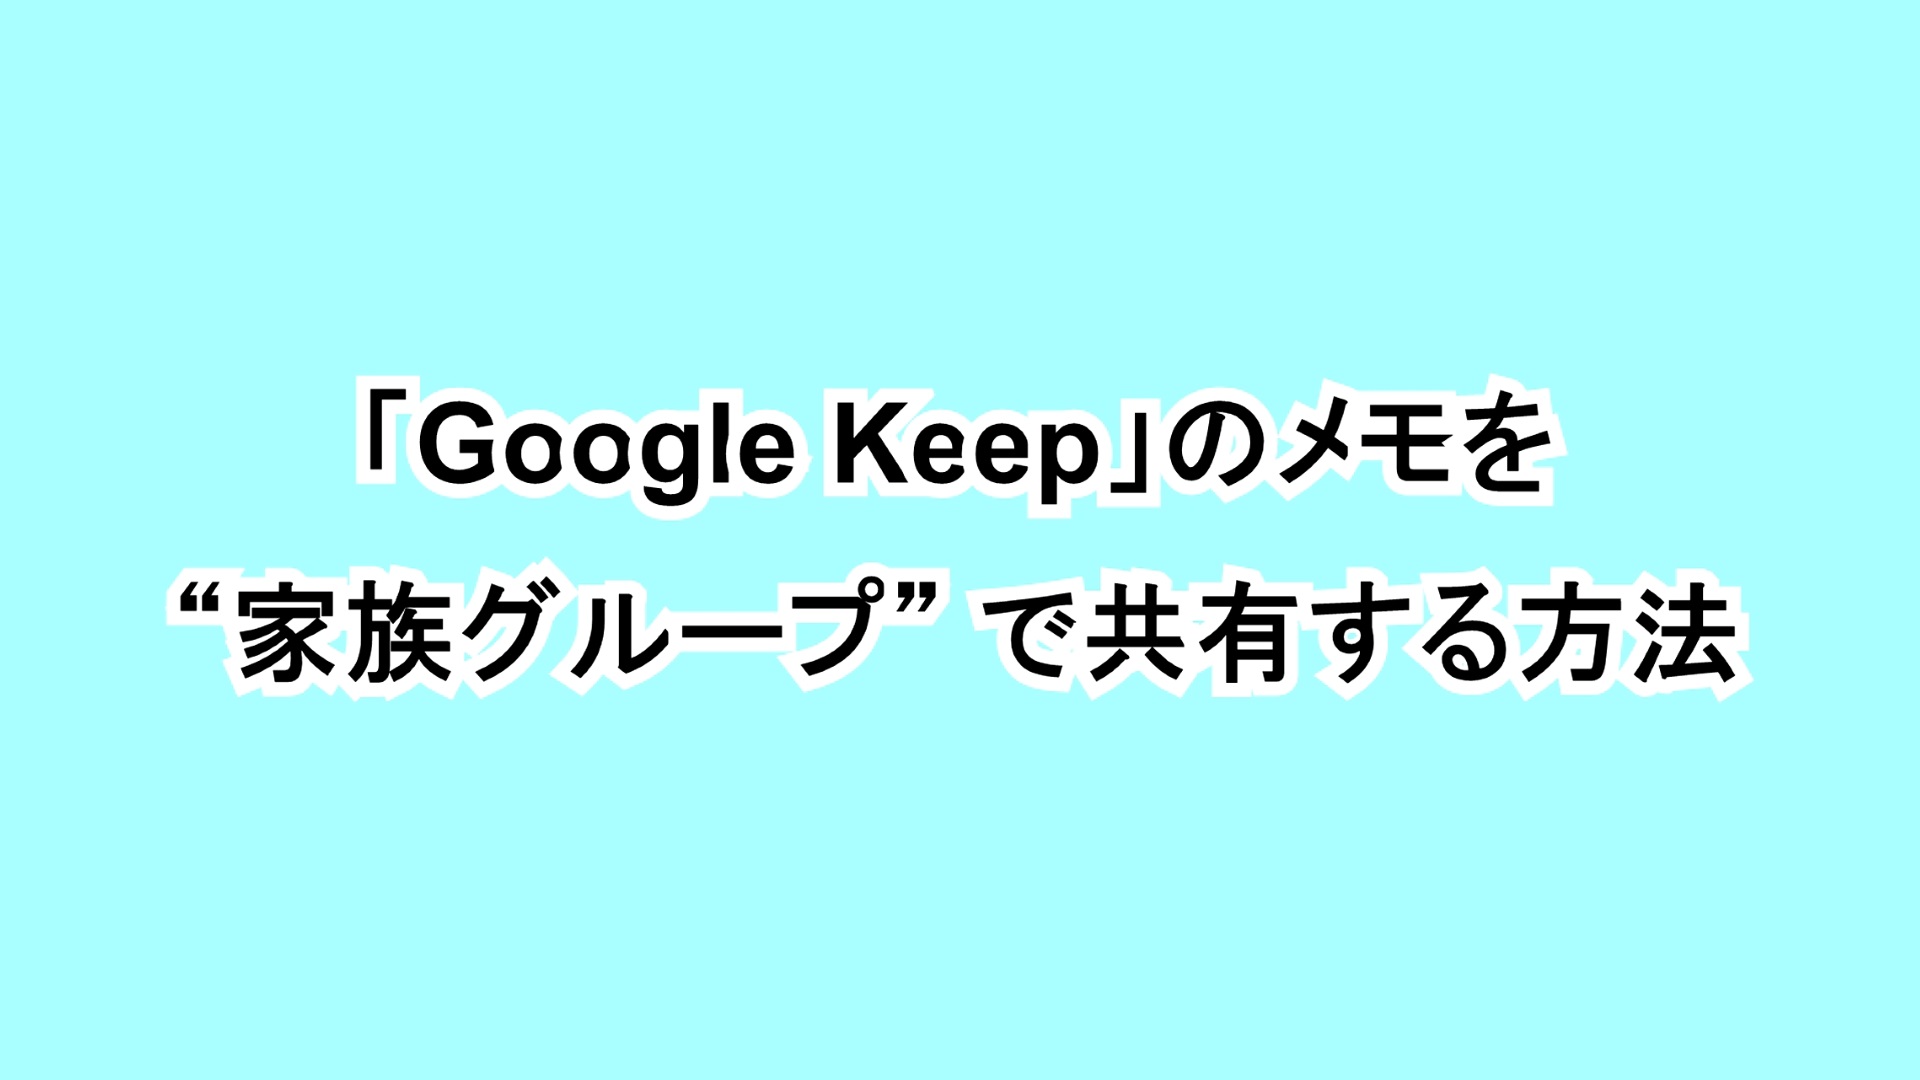 「Google Keep」のメモを“家族グループ”で共有する方法